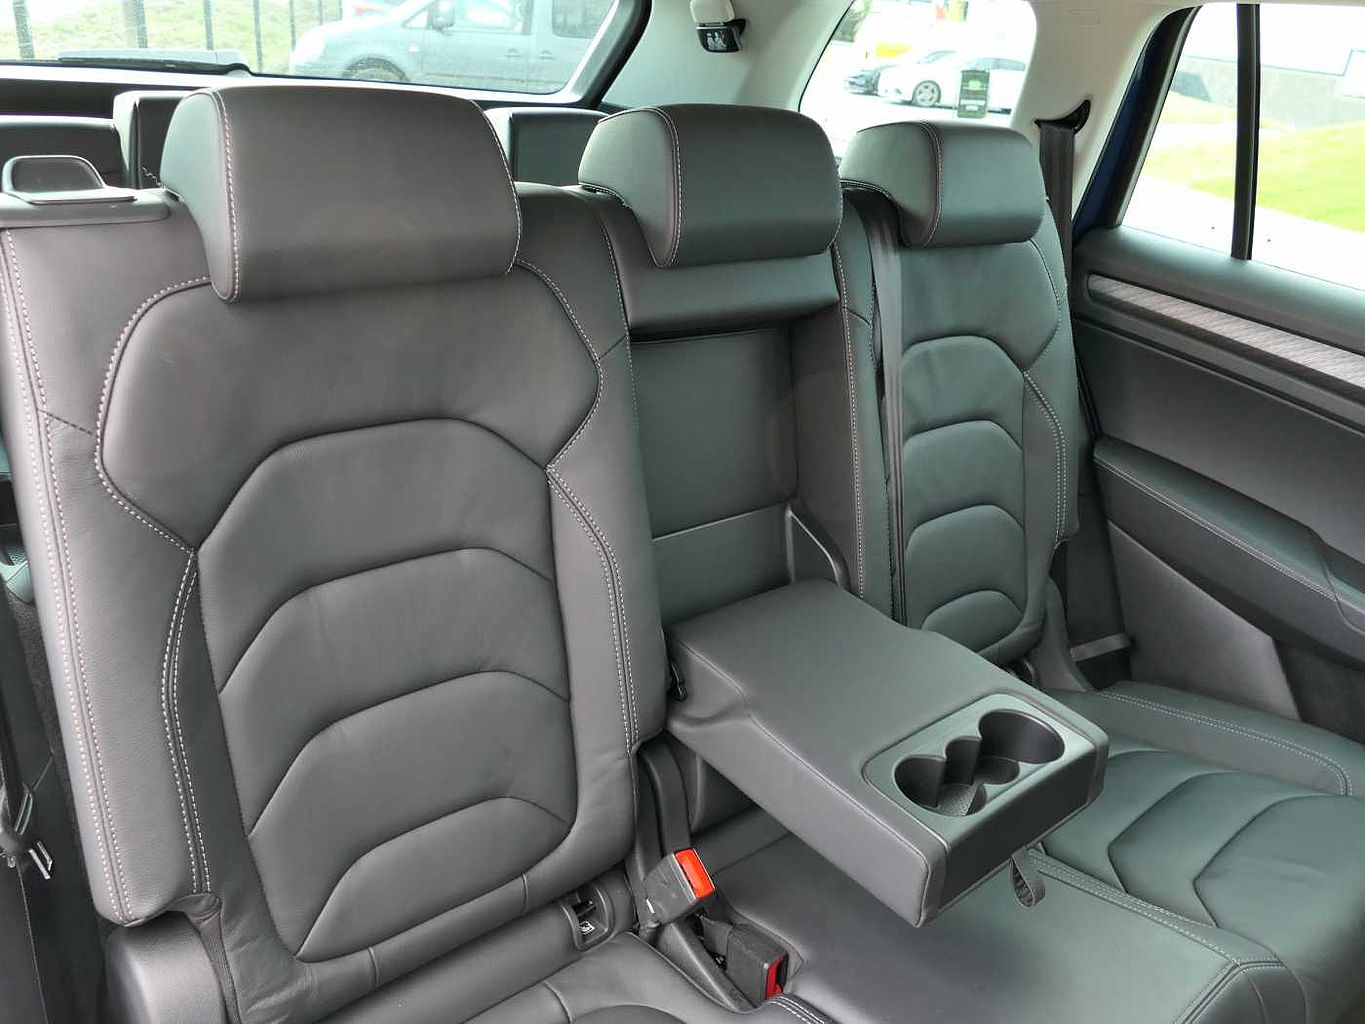 SKODA Kodiaq 1.5 TSI (150ps) SE L Executive (7 Seats) Auto/DSG SUV